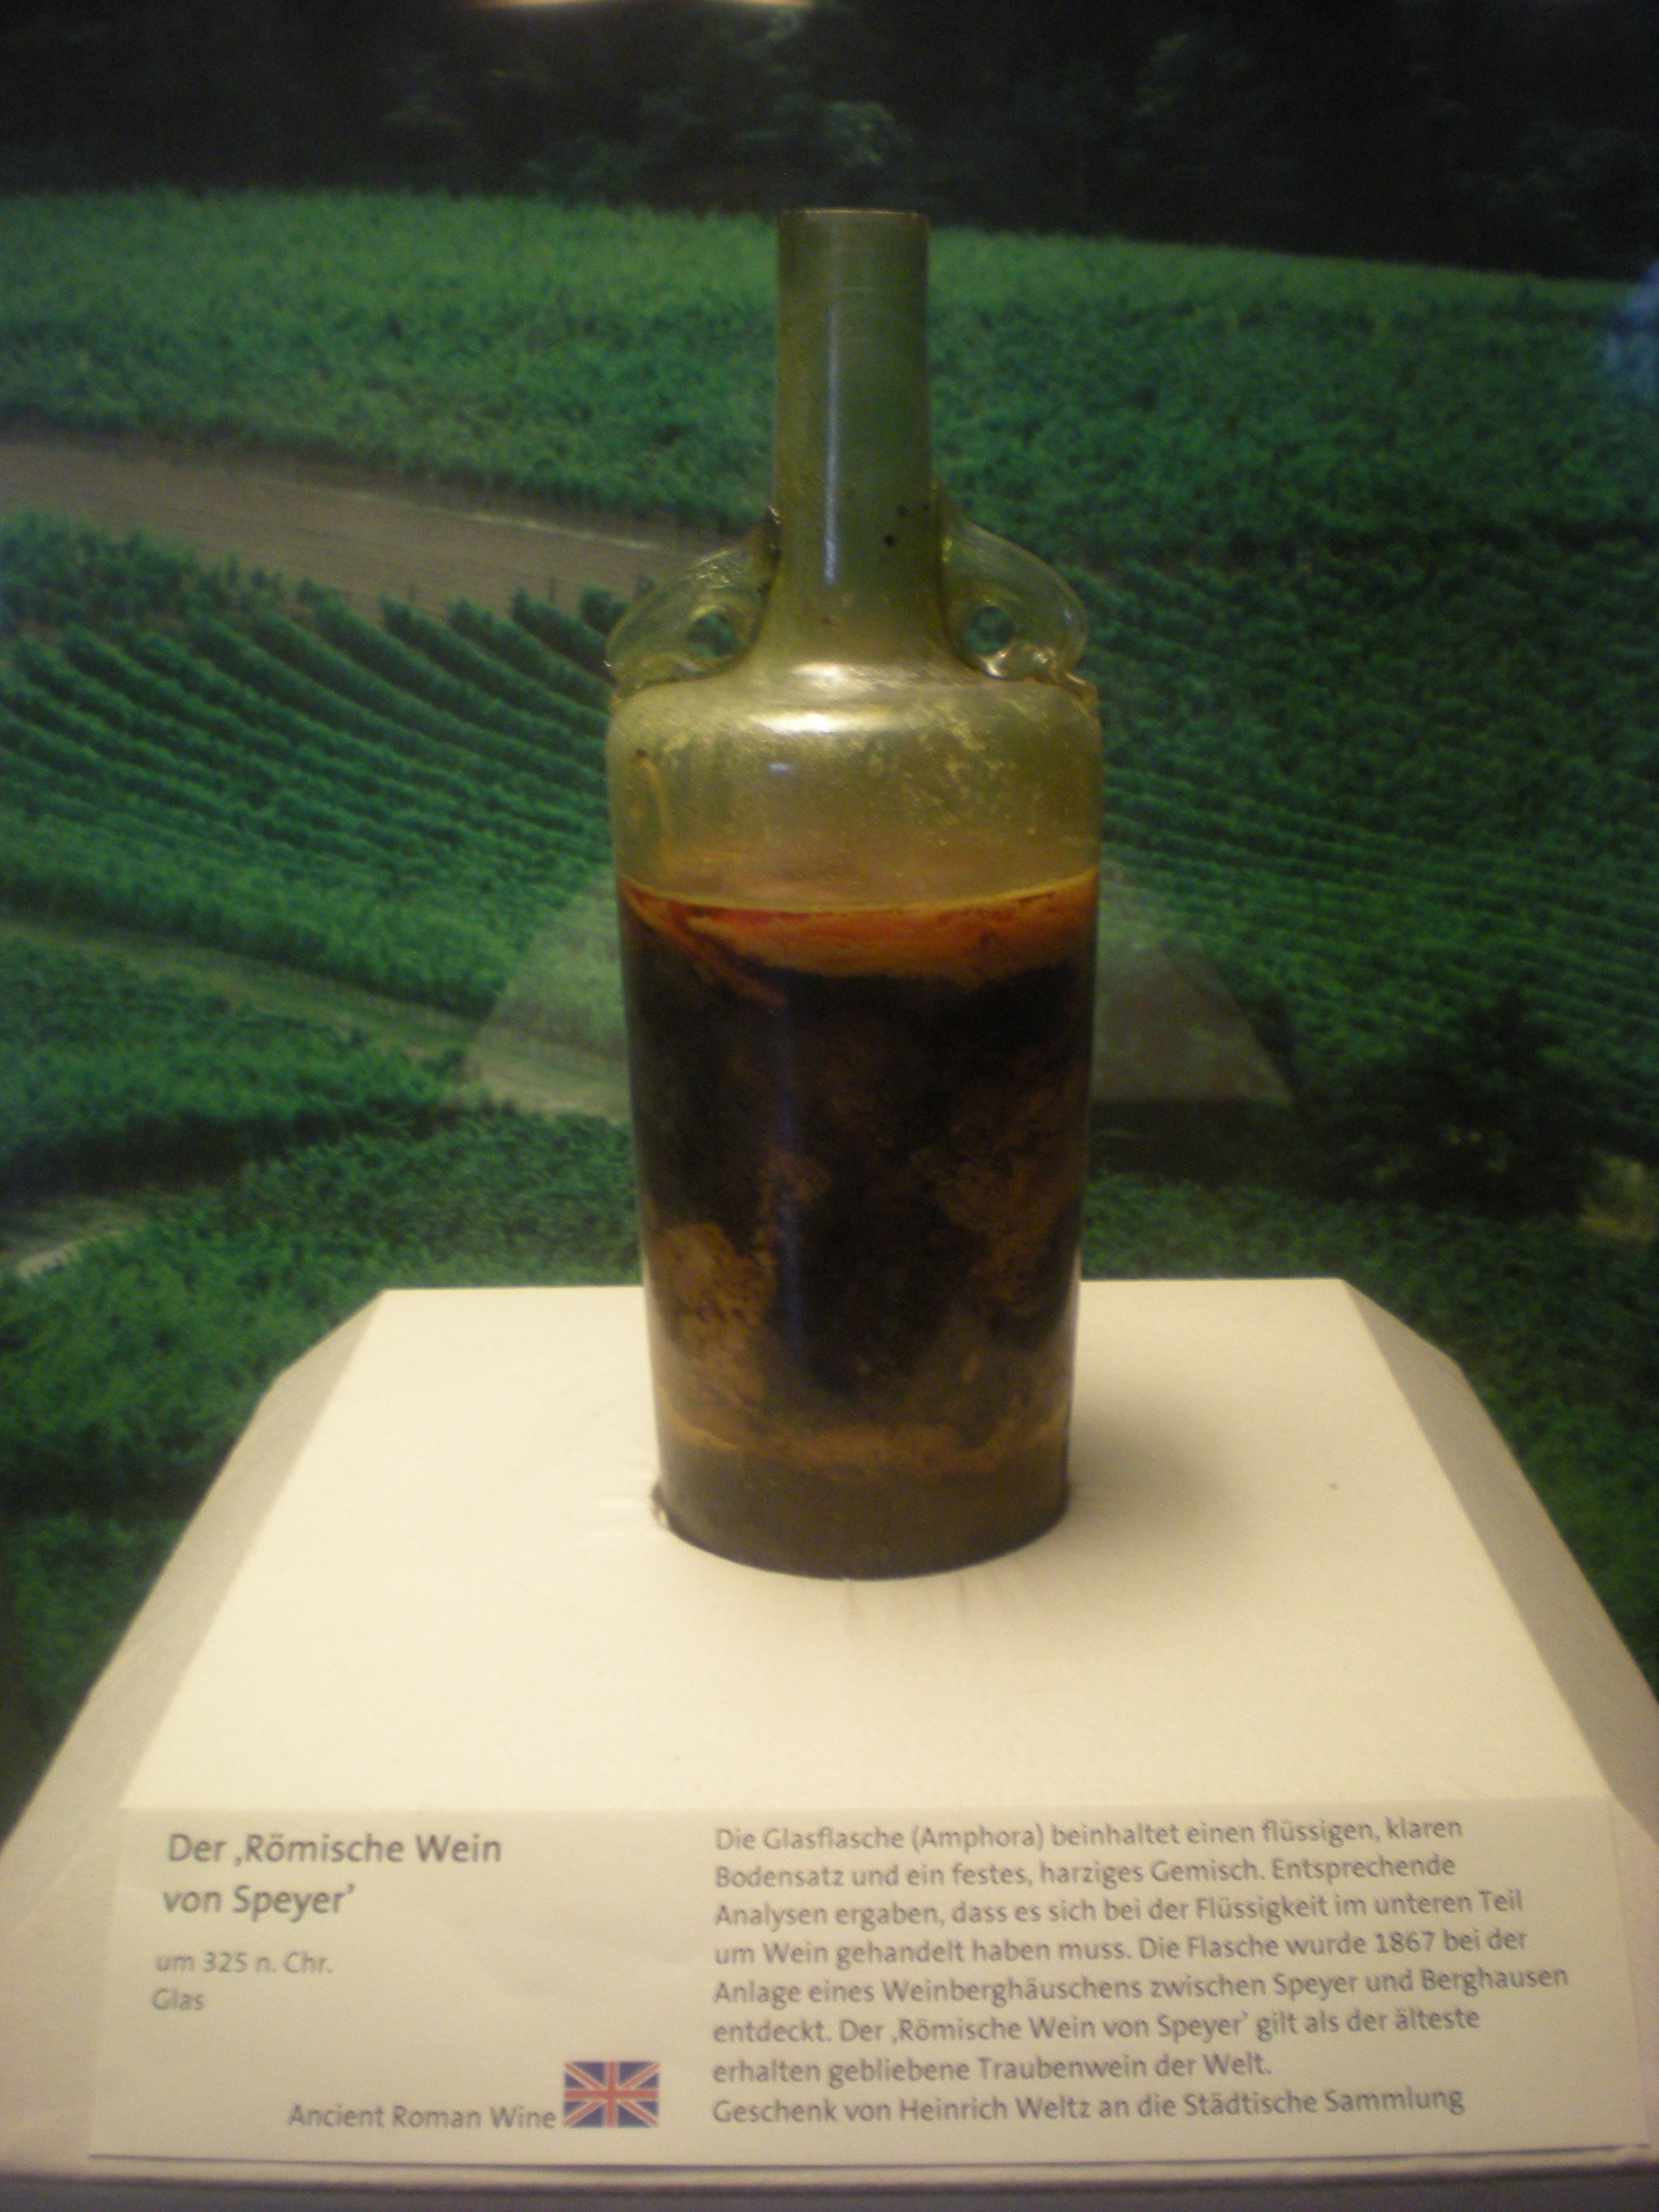 Первый алкогольный напиток. Вино из Шпайера. Speyer самое старое вино. Römerwein von Speyer вино. Самая древняя бутылка вина в мире.